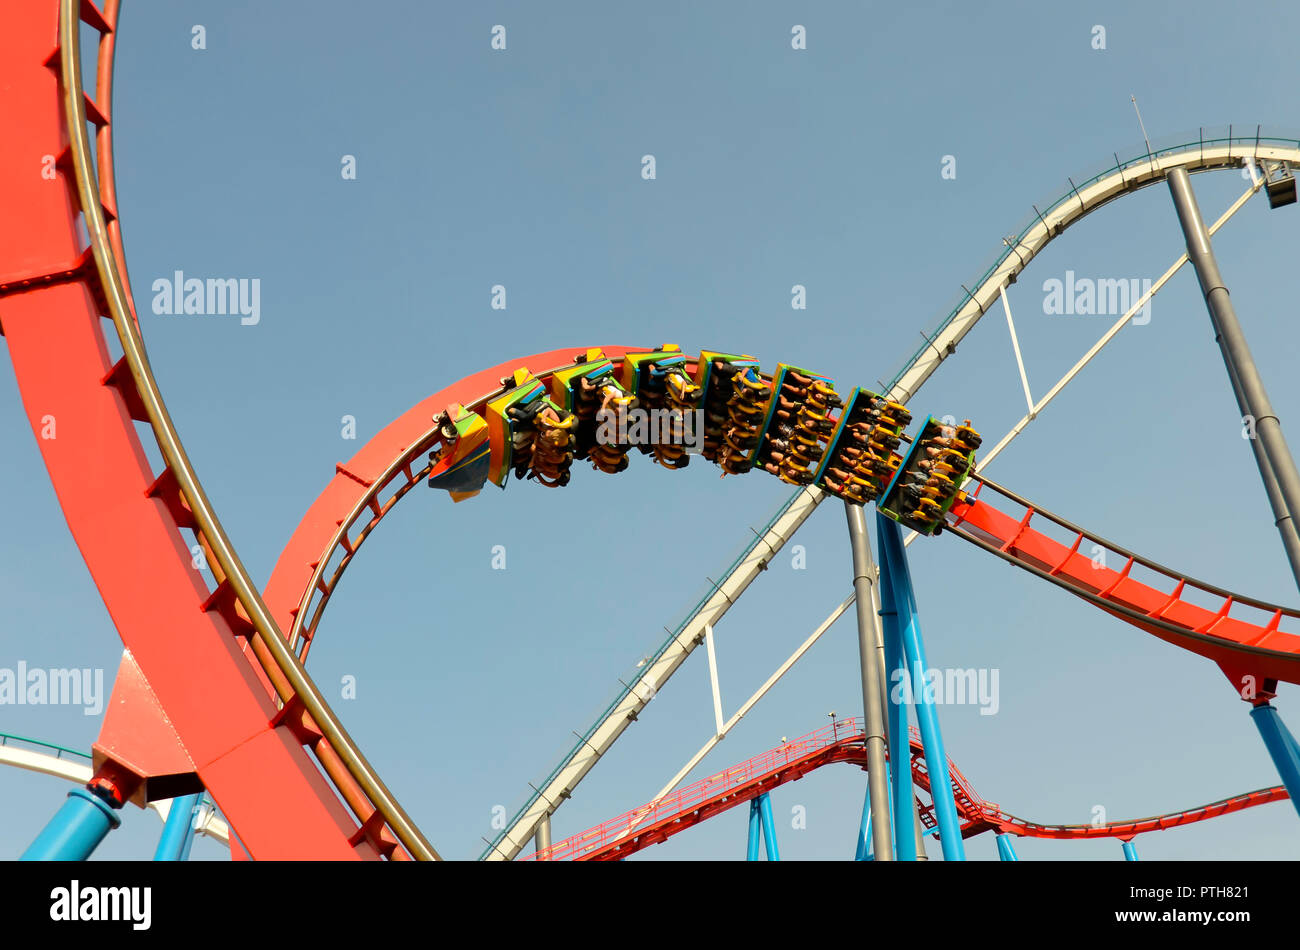 roller coaster between metal structure Stock Photo